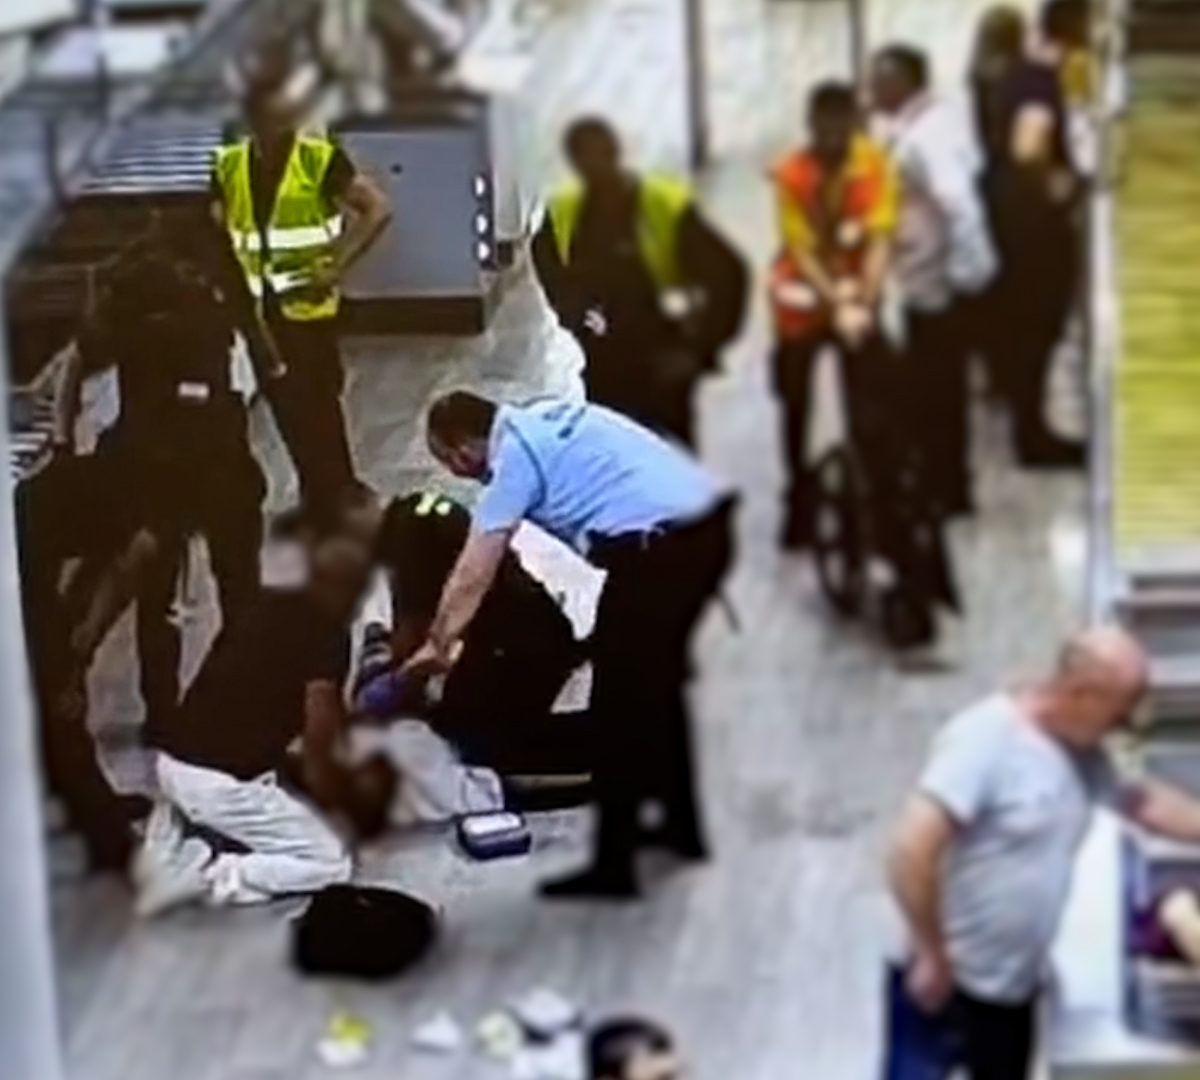 La Guardia Civil reanimó a un pasajero en el aeropuerto de Barcelona con parada cardiorrespiratoria